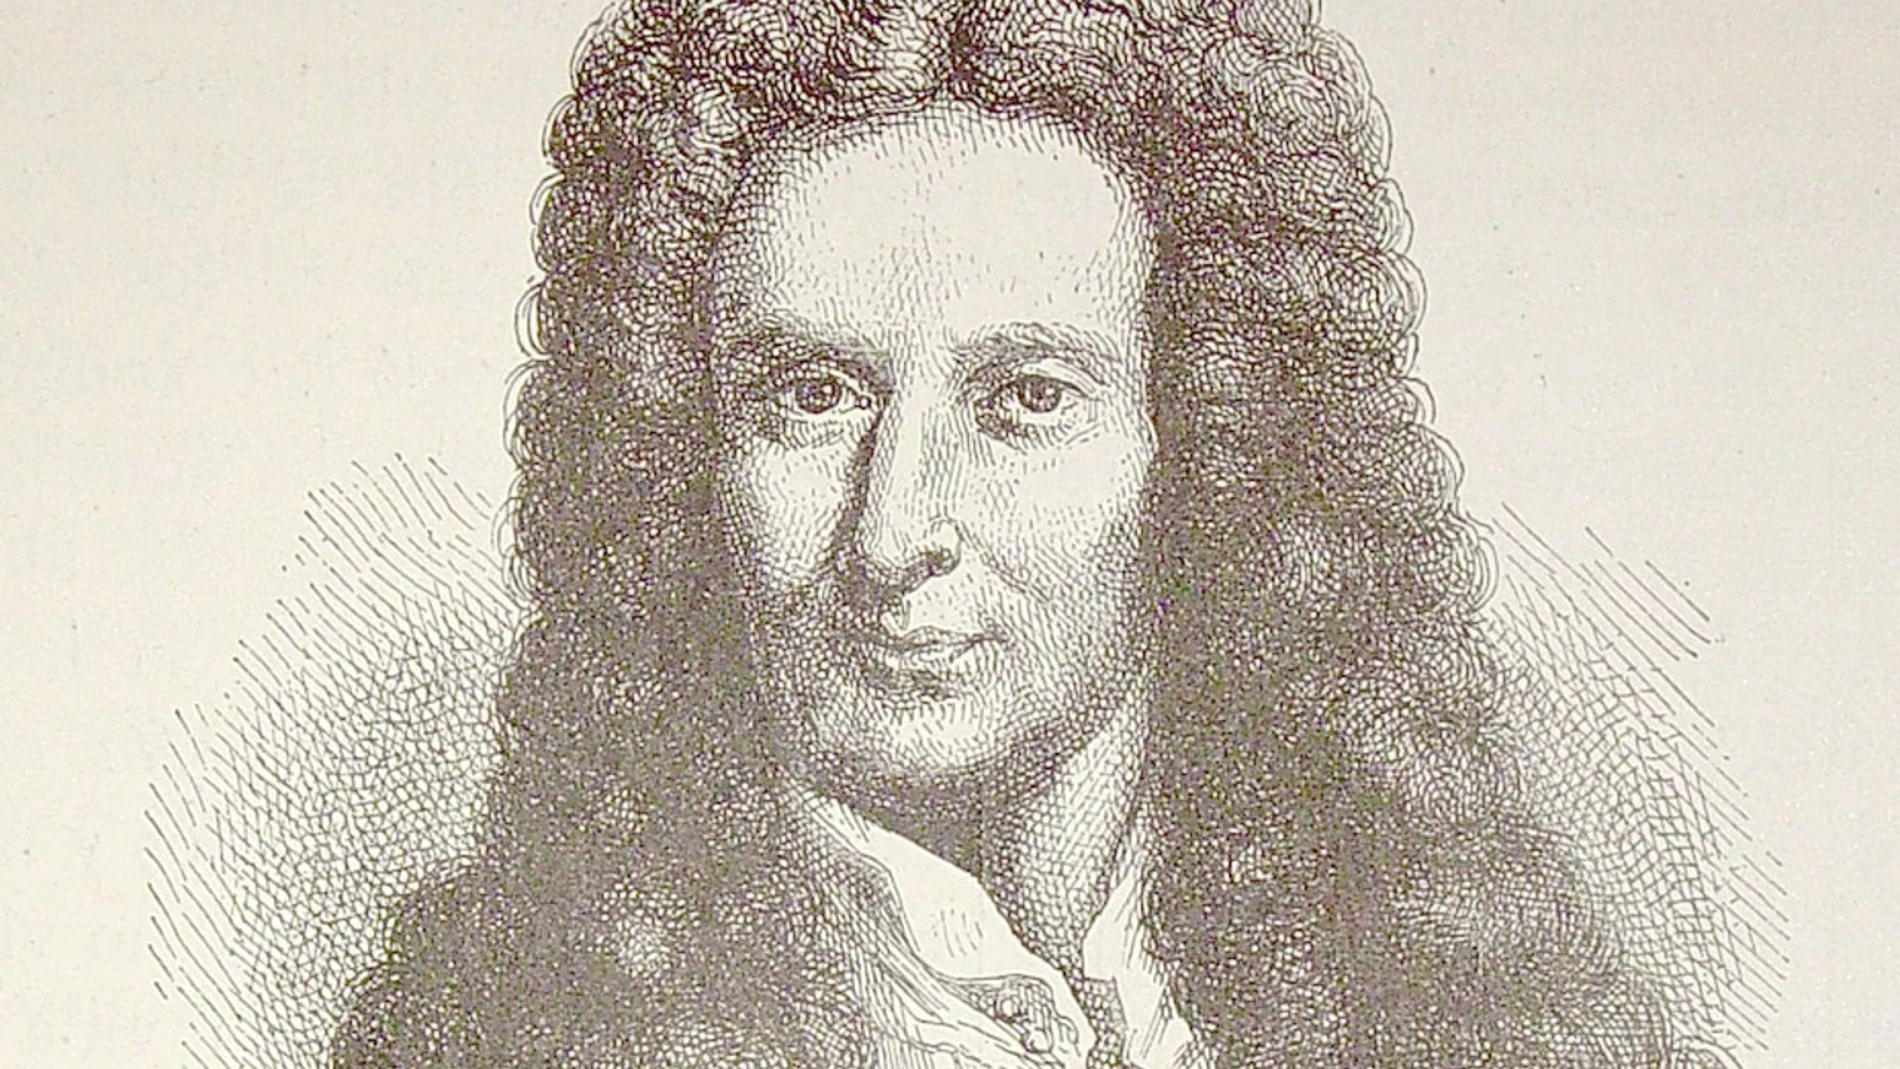 Retrato de Isaac Newton (Ilustración del libro "El mundo físico" de A. Guillemin)